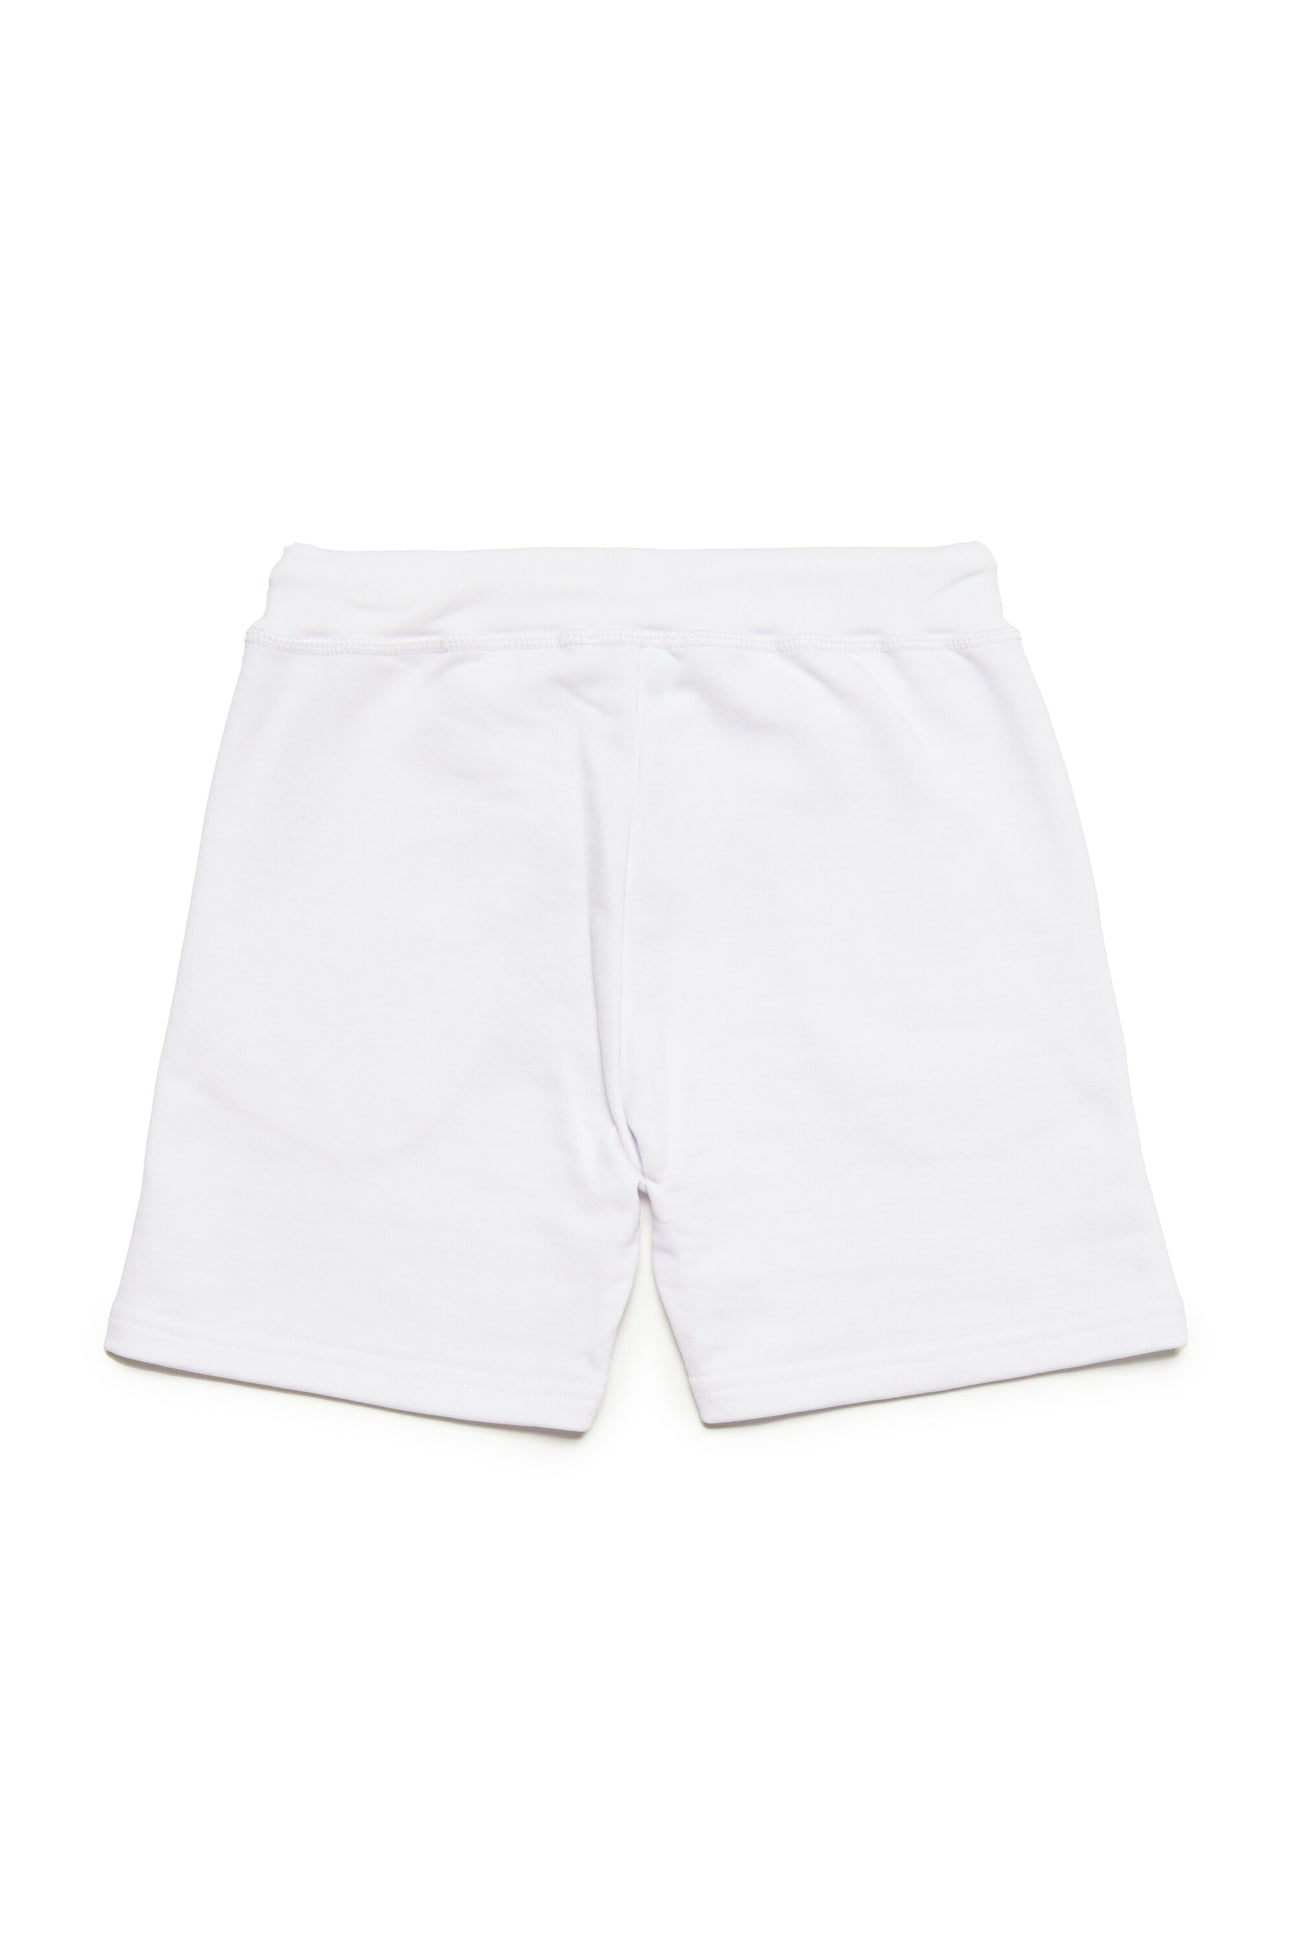 White cotton shorts with Icon logo White cotton shorts with Icon logo